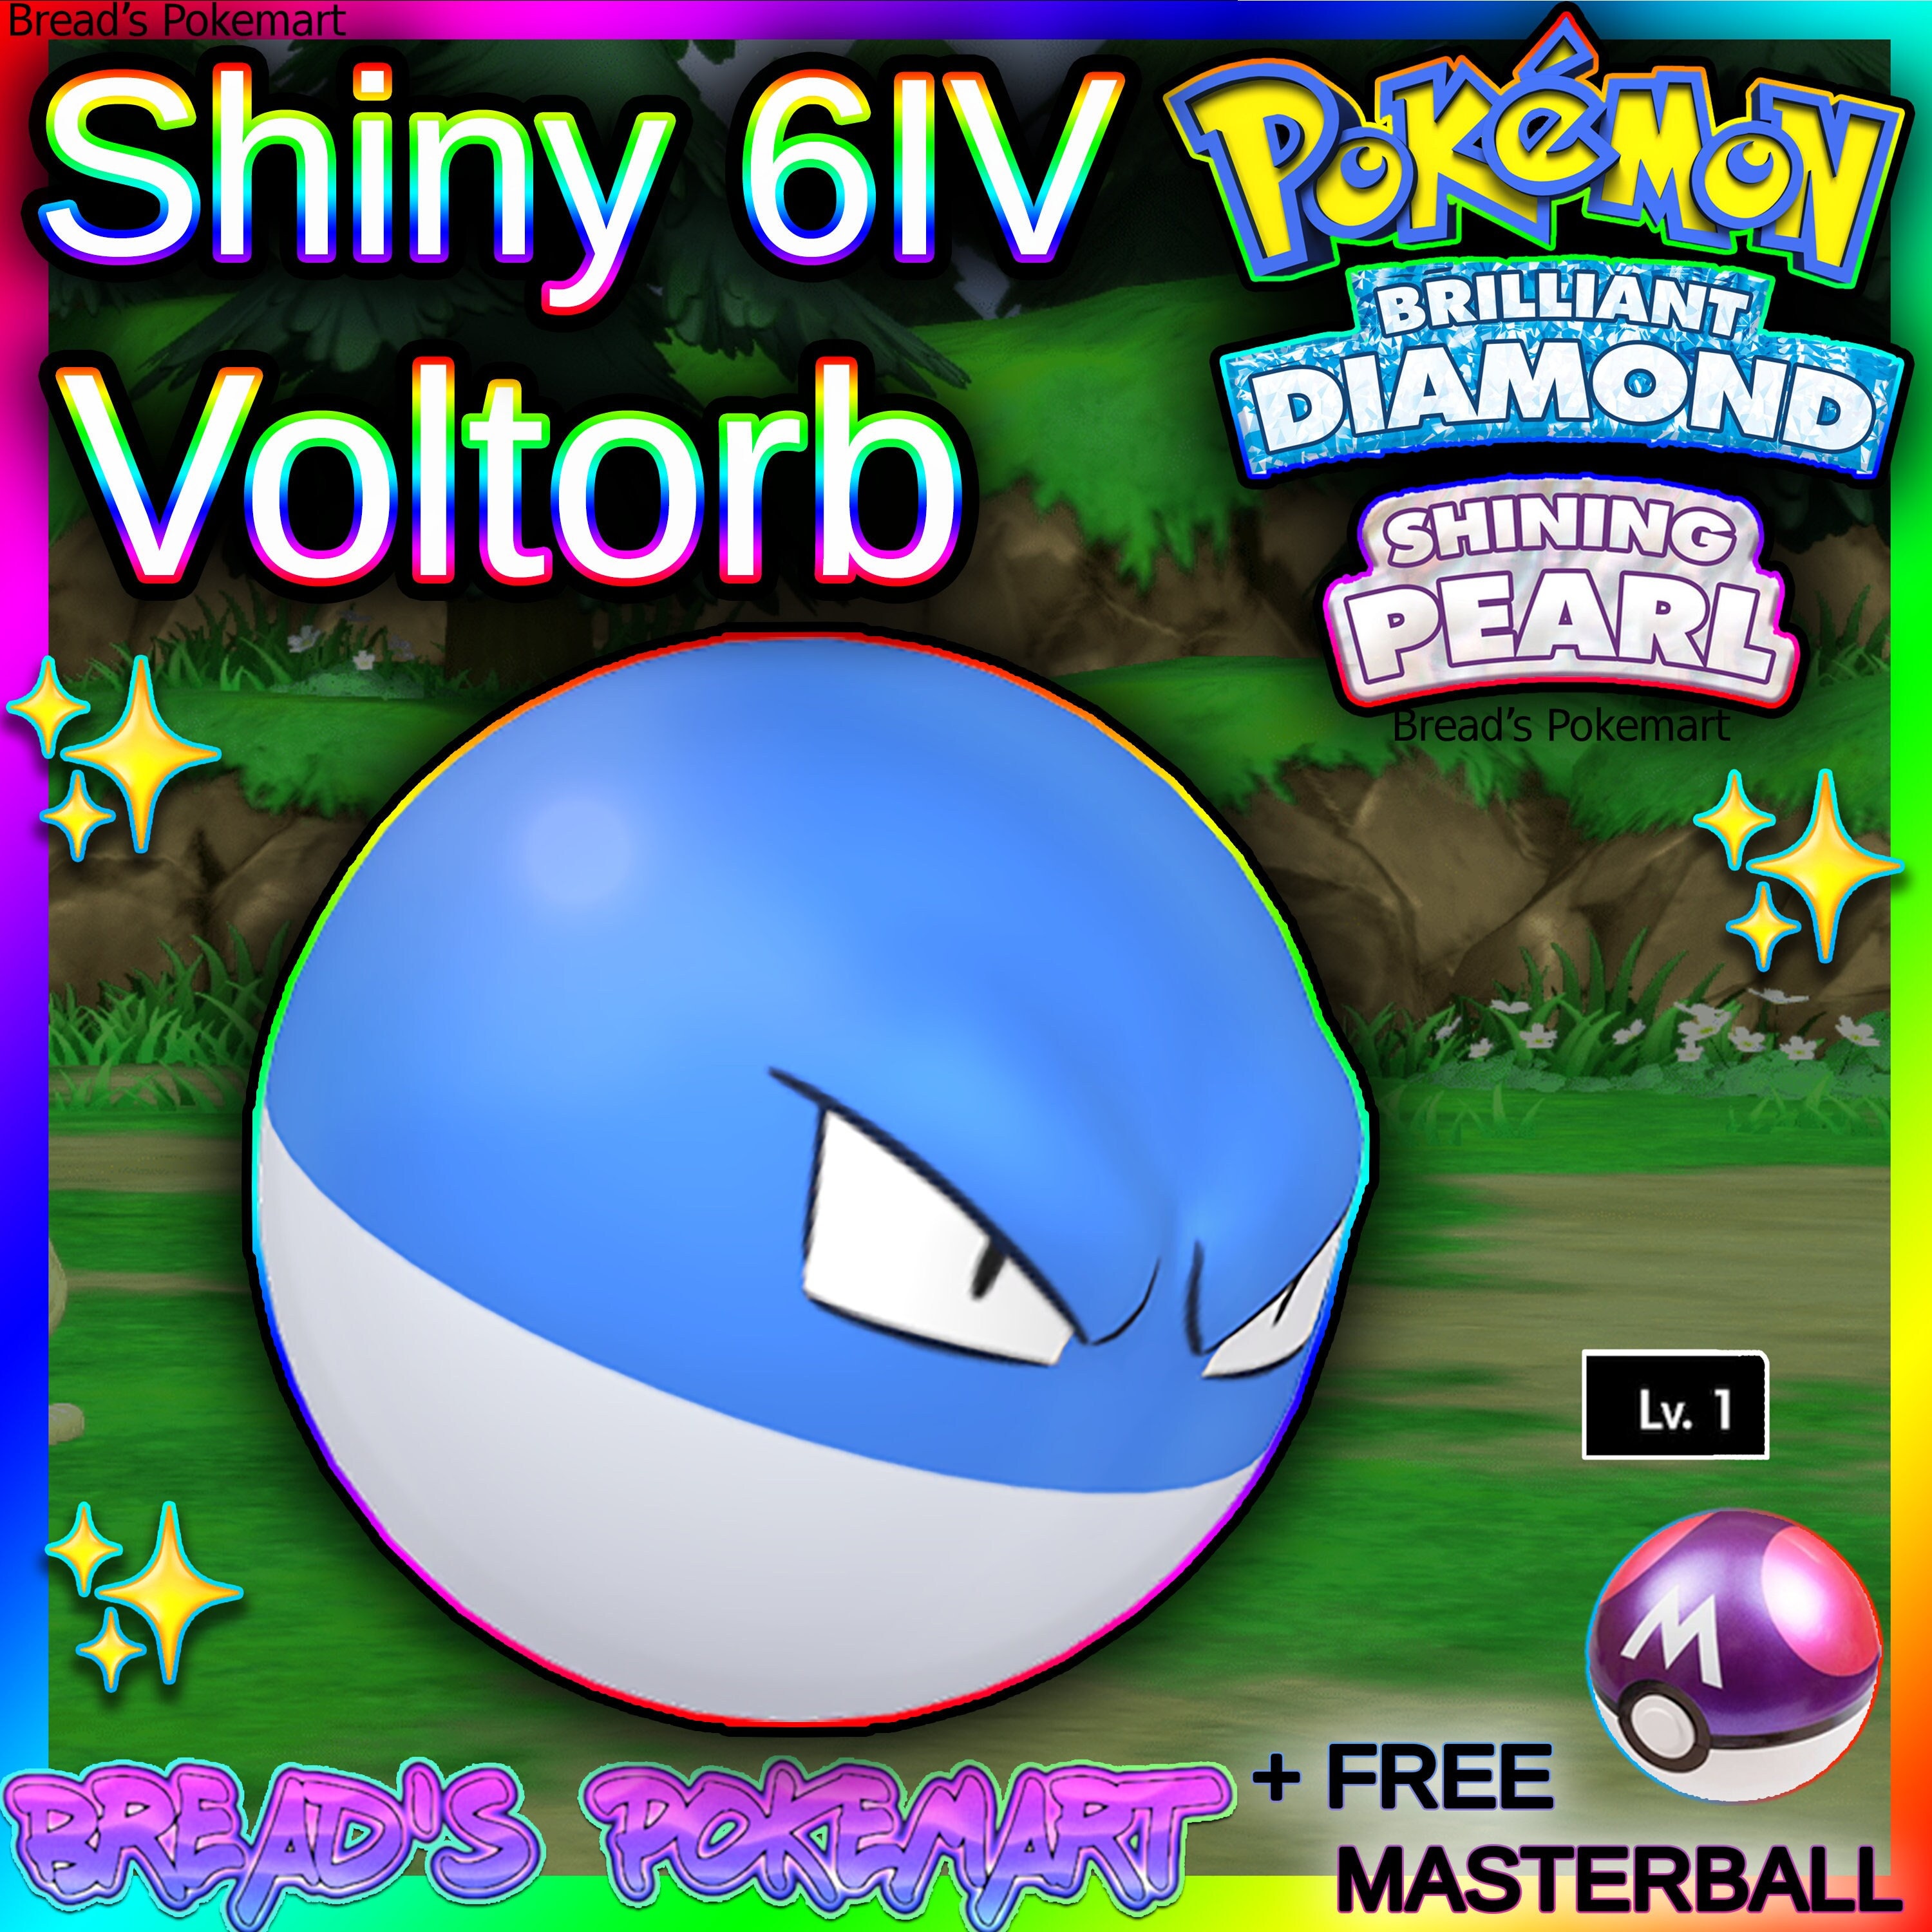 Voltorb - Hisui ✨ Shiny 6IV ✨ Pokémon Scarlet and Violet